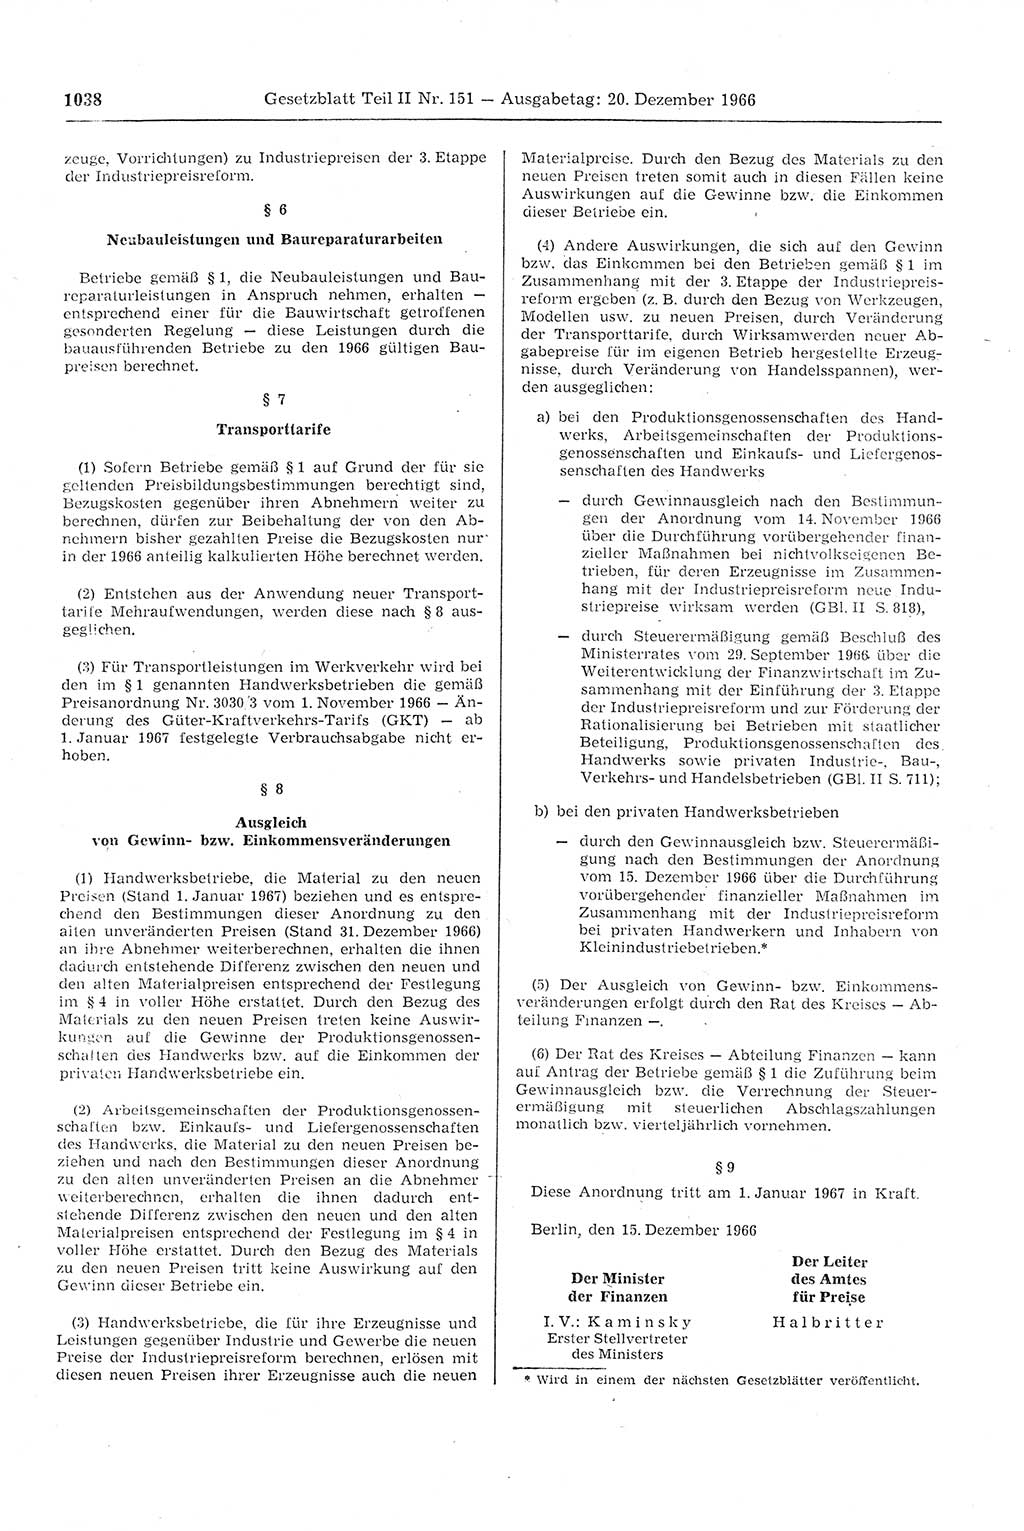 Gesetzblatt (GBl.) der Deutschen Demokratischen Republik (DDR) Teil ⅠⅠ 1966, Seite 1038 (GBl. DDR ⅠⅠ 1966, S. 1038)